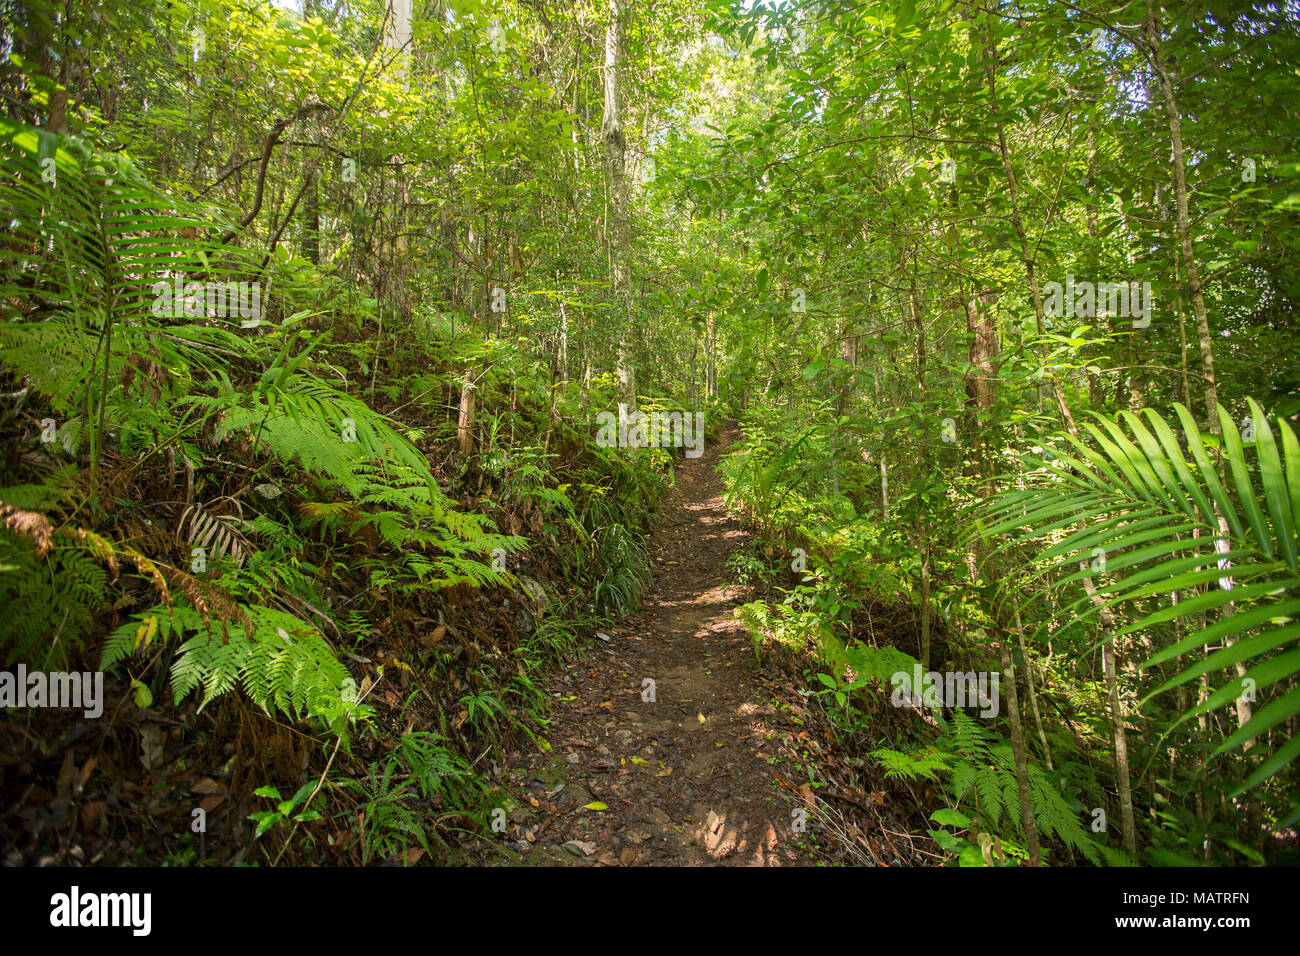 Les forêts d'émeraude dense de fougères et de fougères rompu par un sentier étroit en parc national de Conondale Queensland Australie Banque D'Images